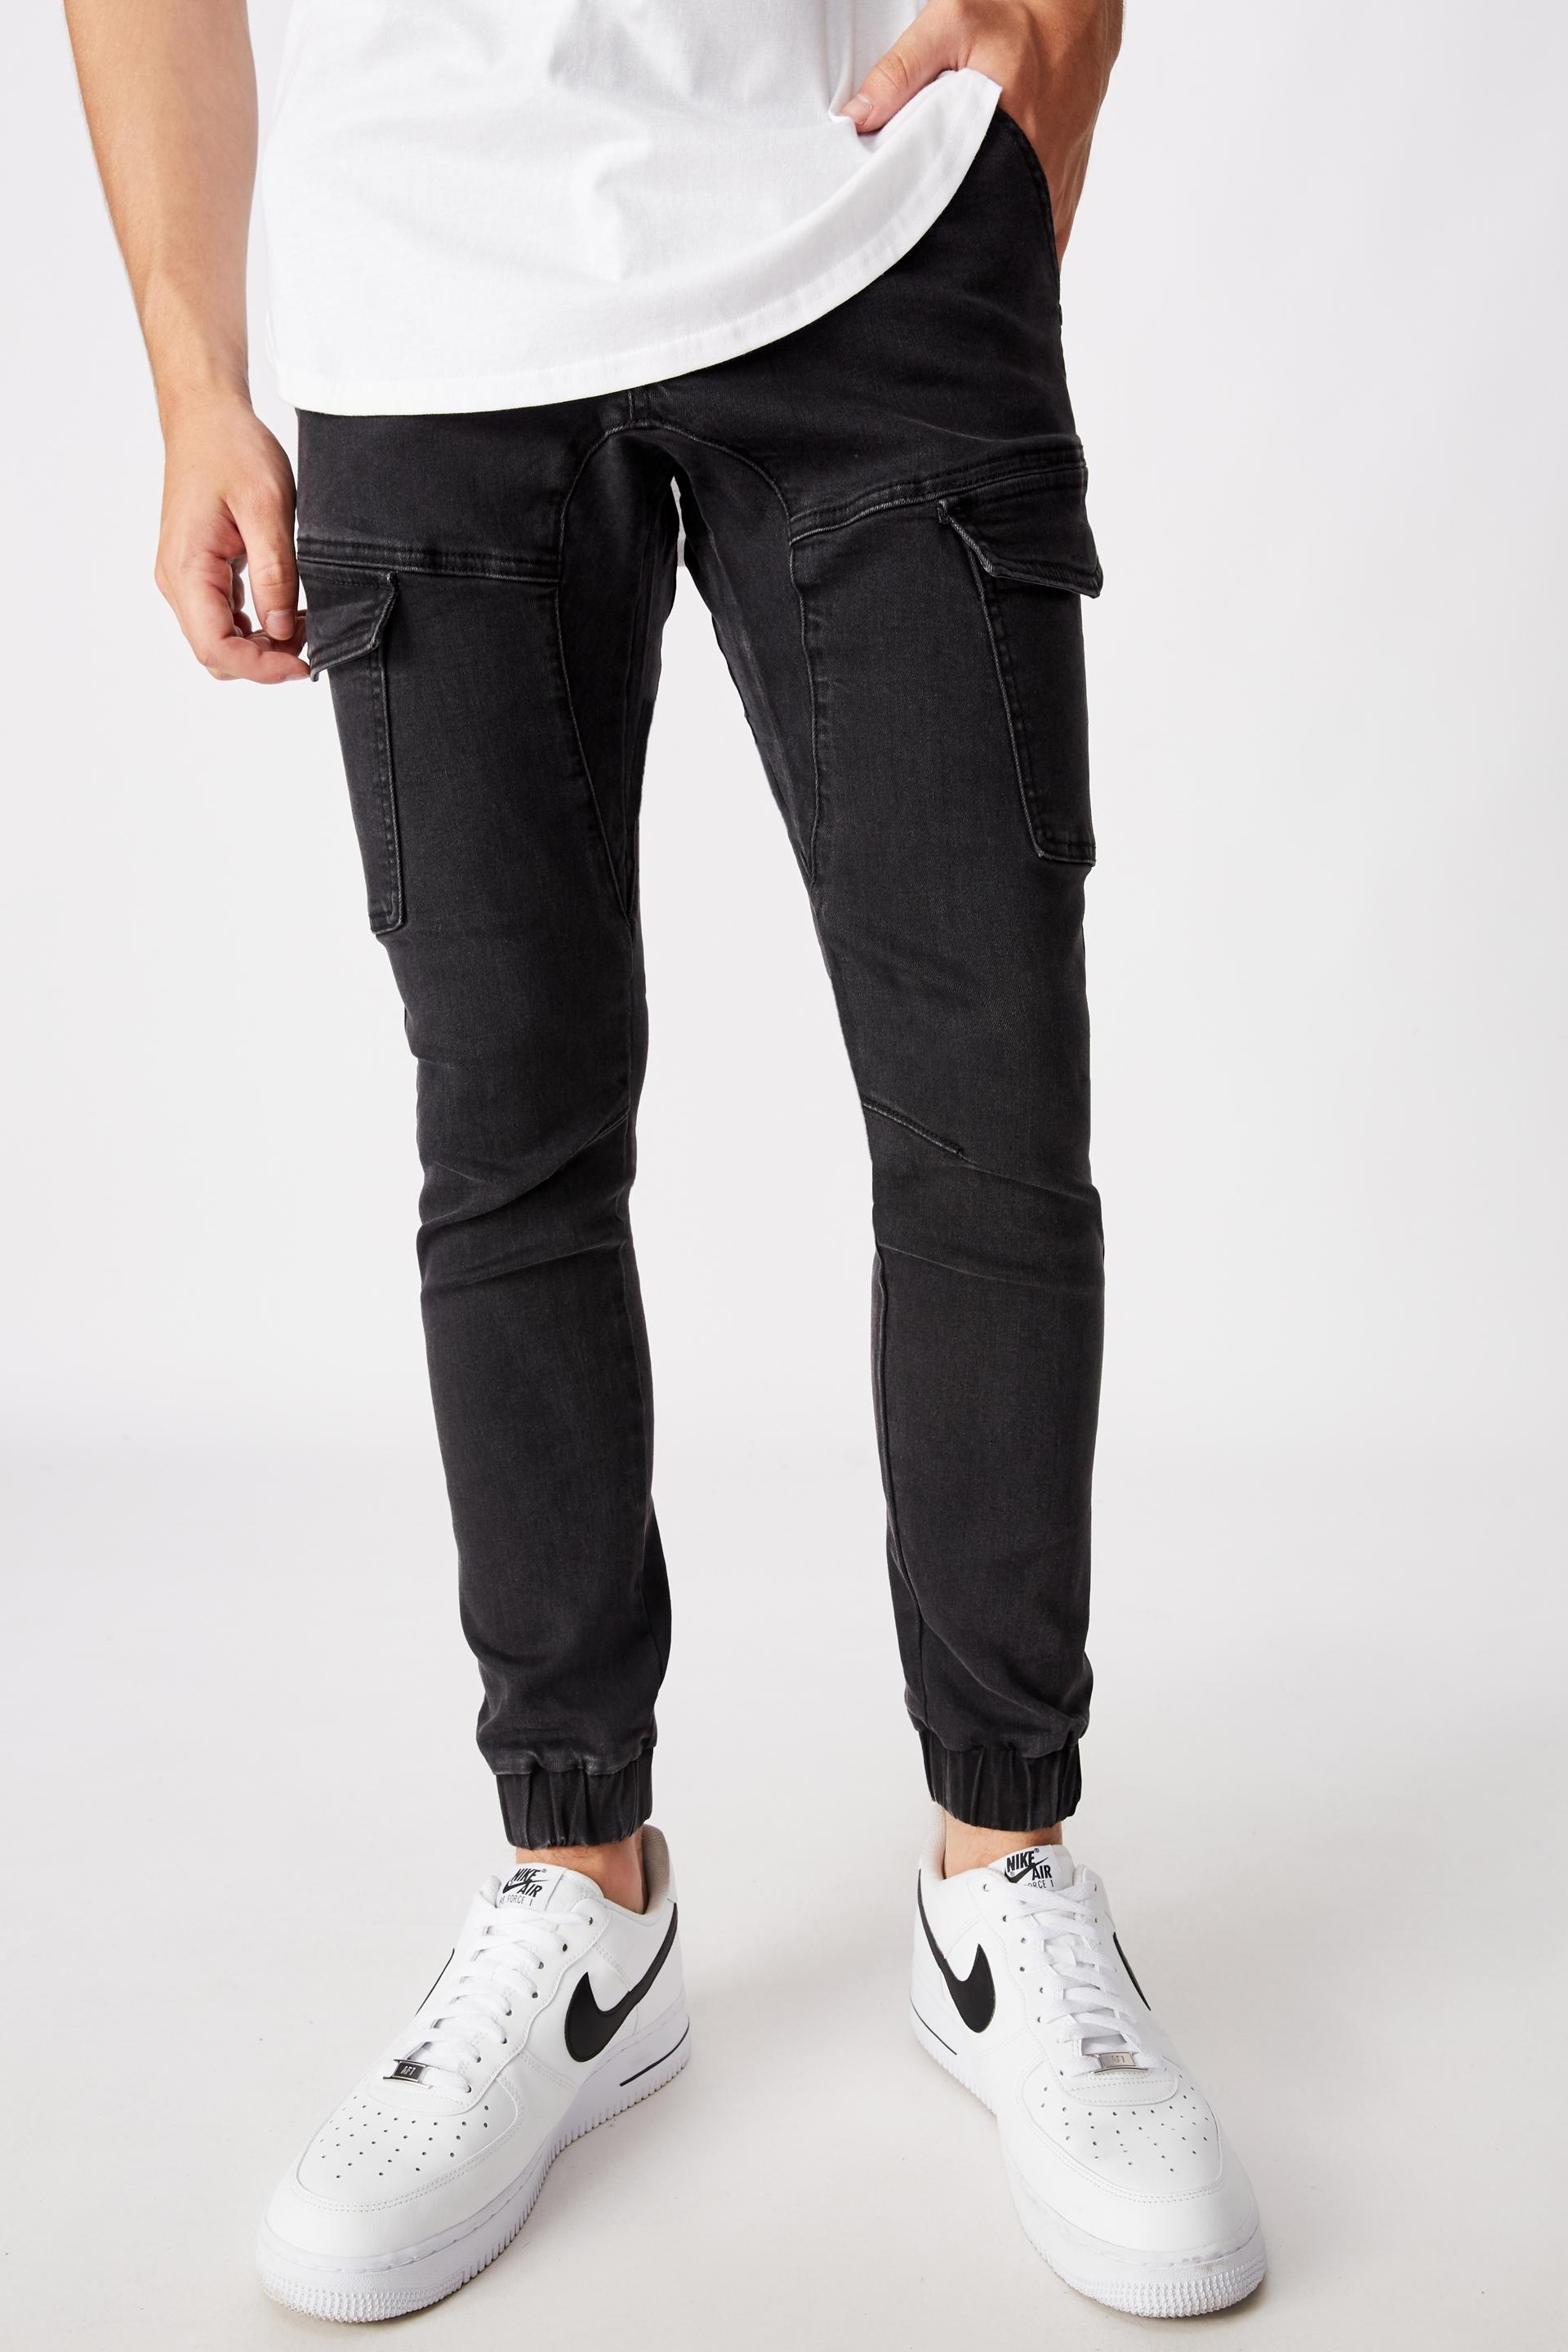 Utility pocket jean - washed black Factorie Jeans | Superbalist.com